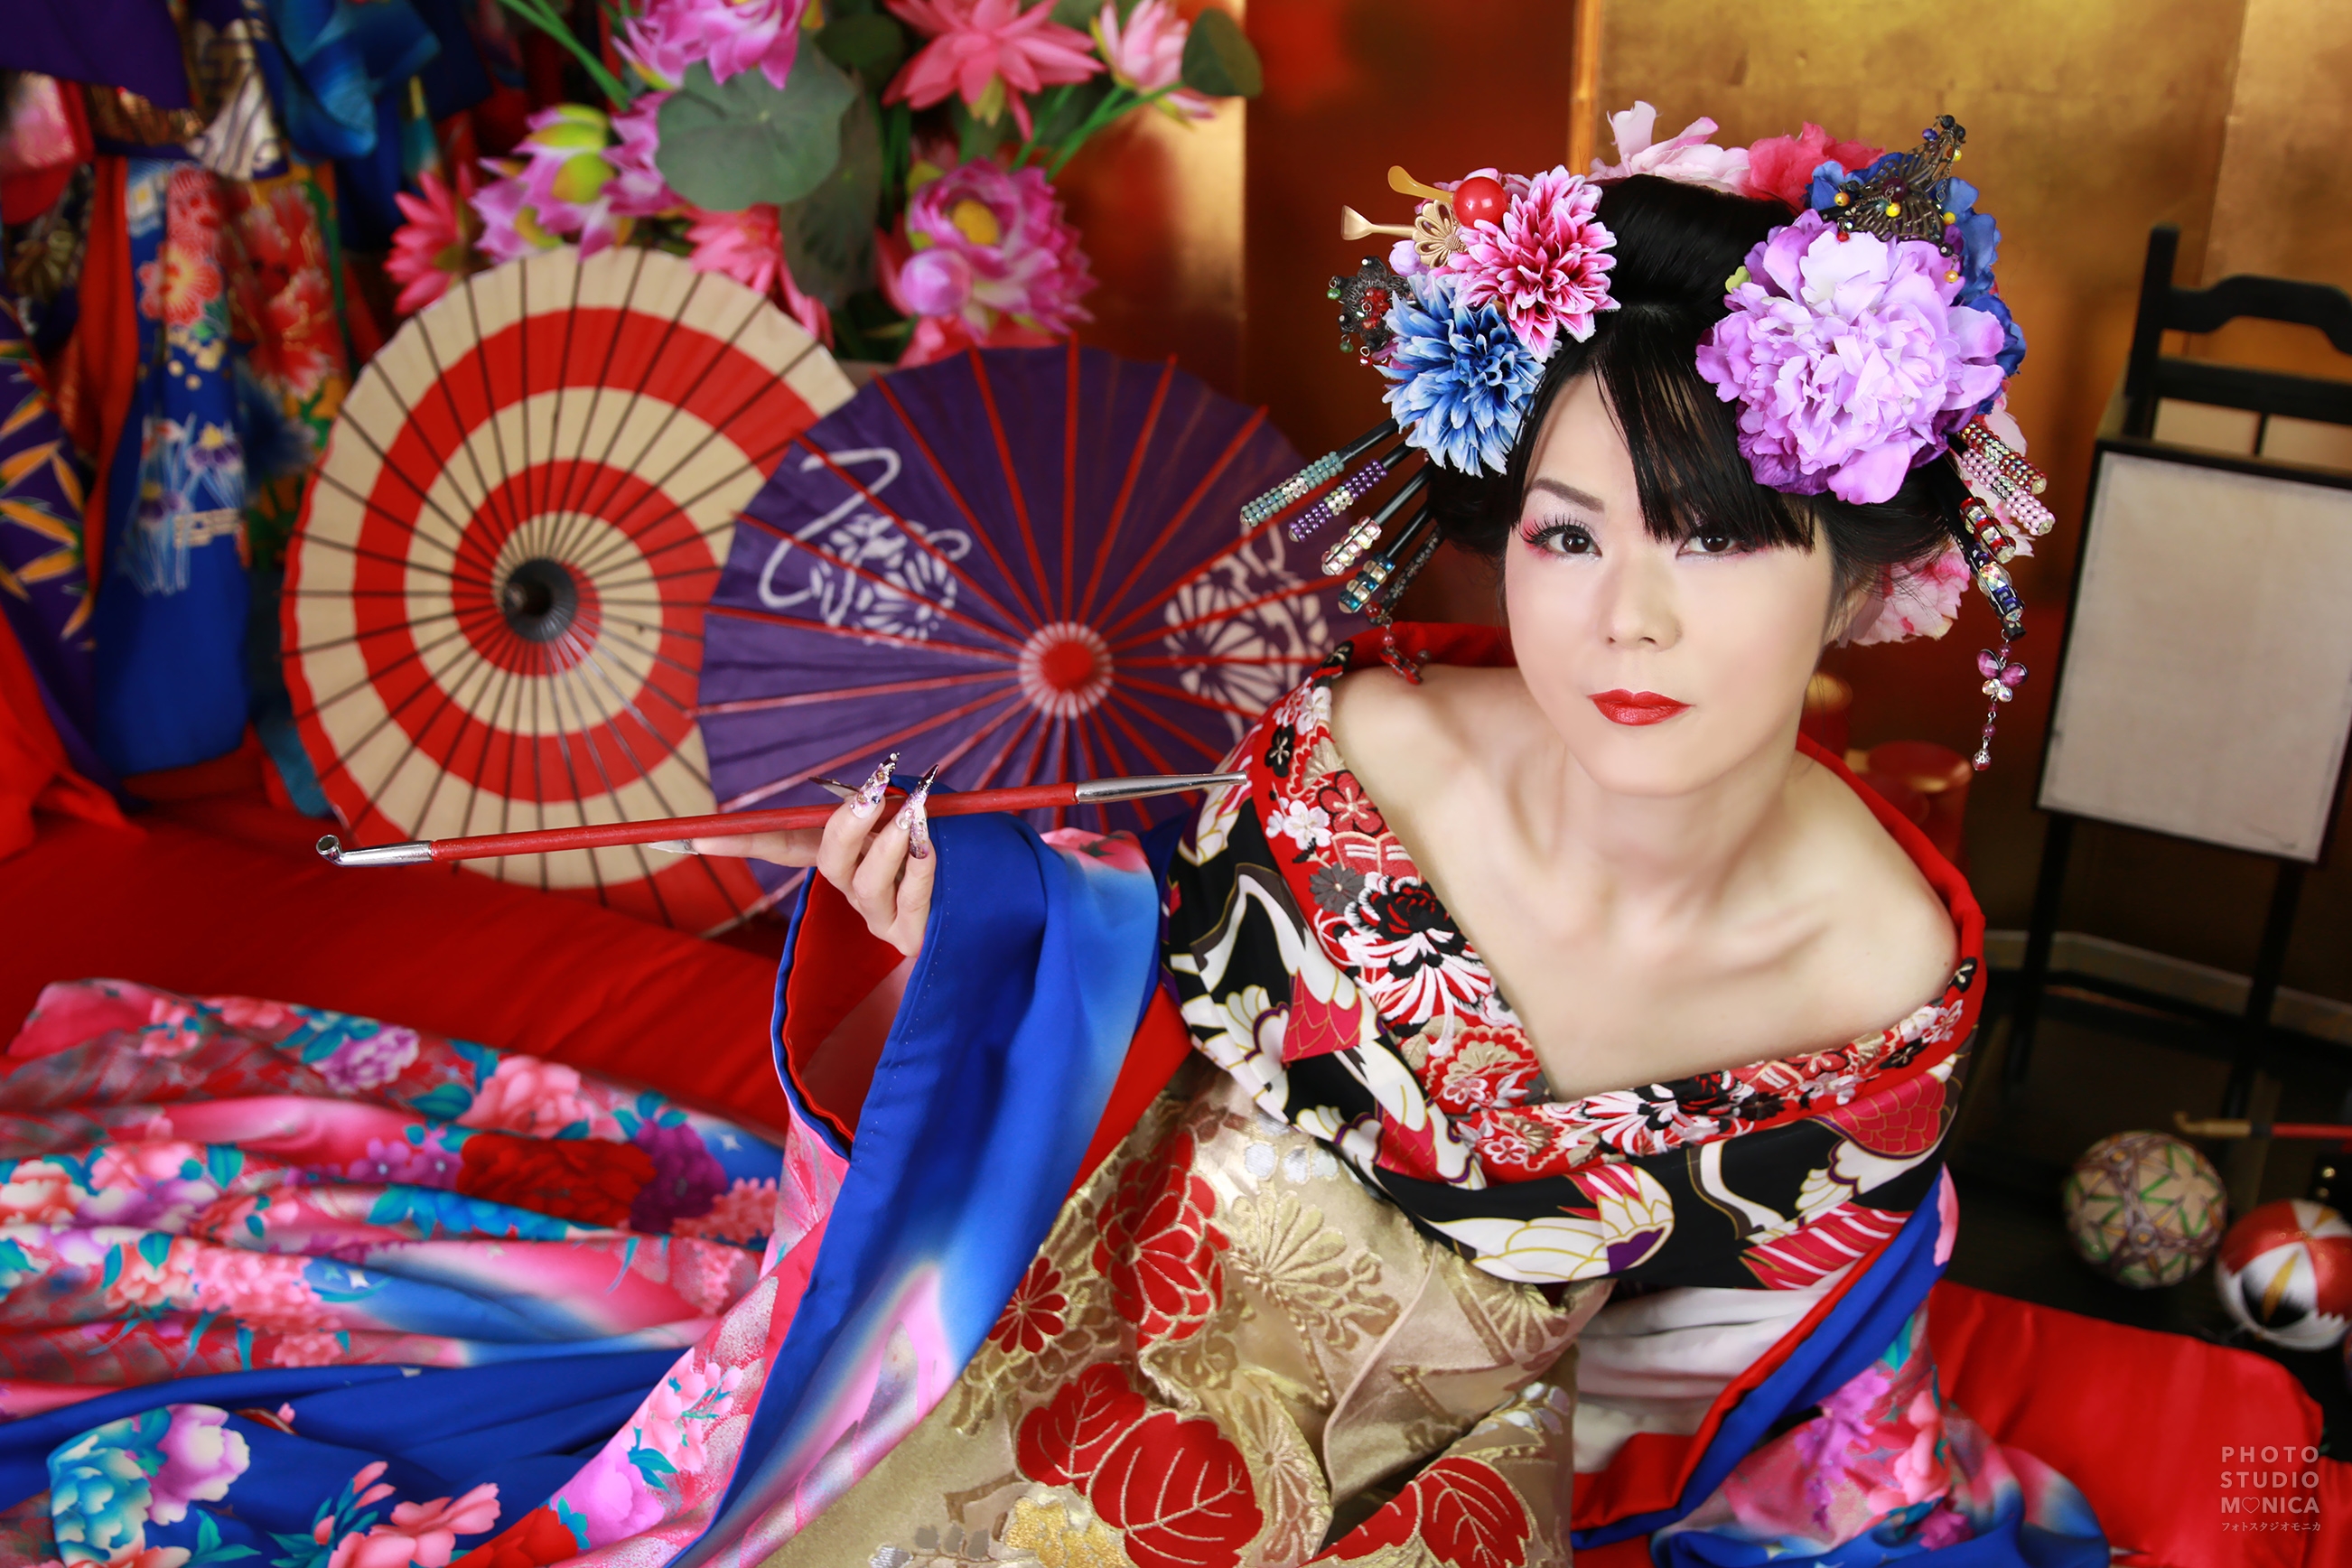 現代風花魁体験と紫のドレスでお姫様変身撮影 ギャラリー 京都の花魁体験®・変身写真フォトスタジオモニカ